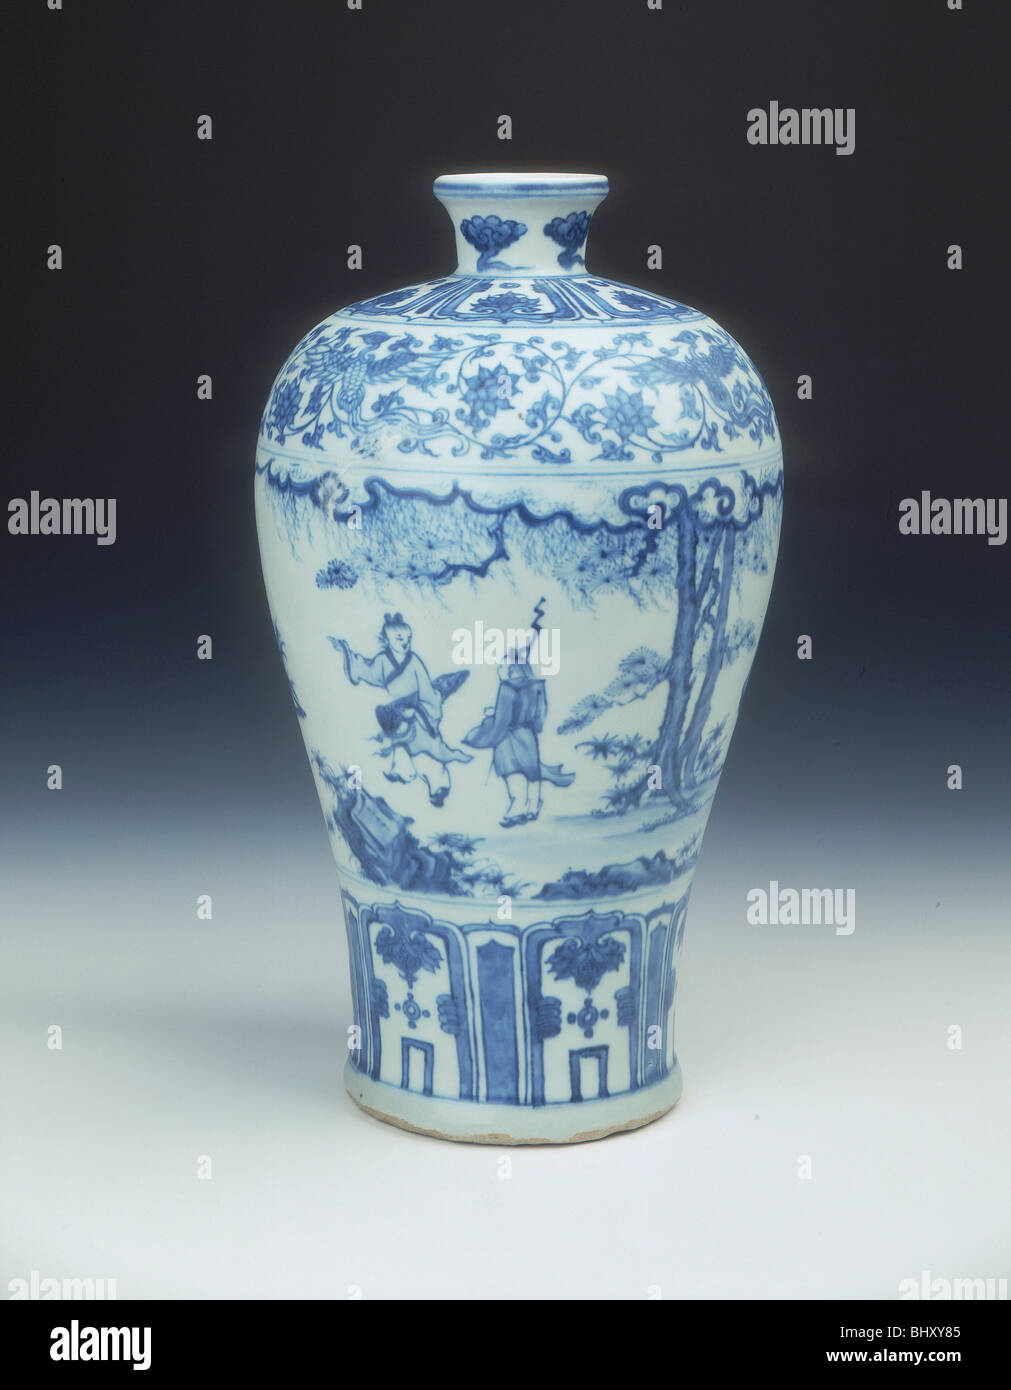 Vase meiping emaillé bleu et blanc, dynastie Ming, Chine, 2e moitié du 15e siècle. Artiste : Inconnu Banque D'Images